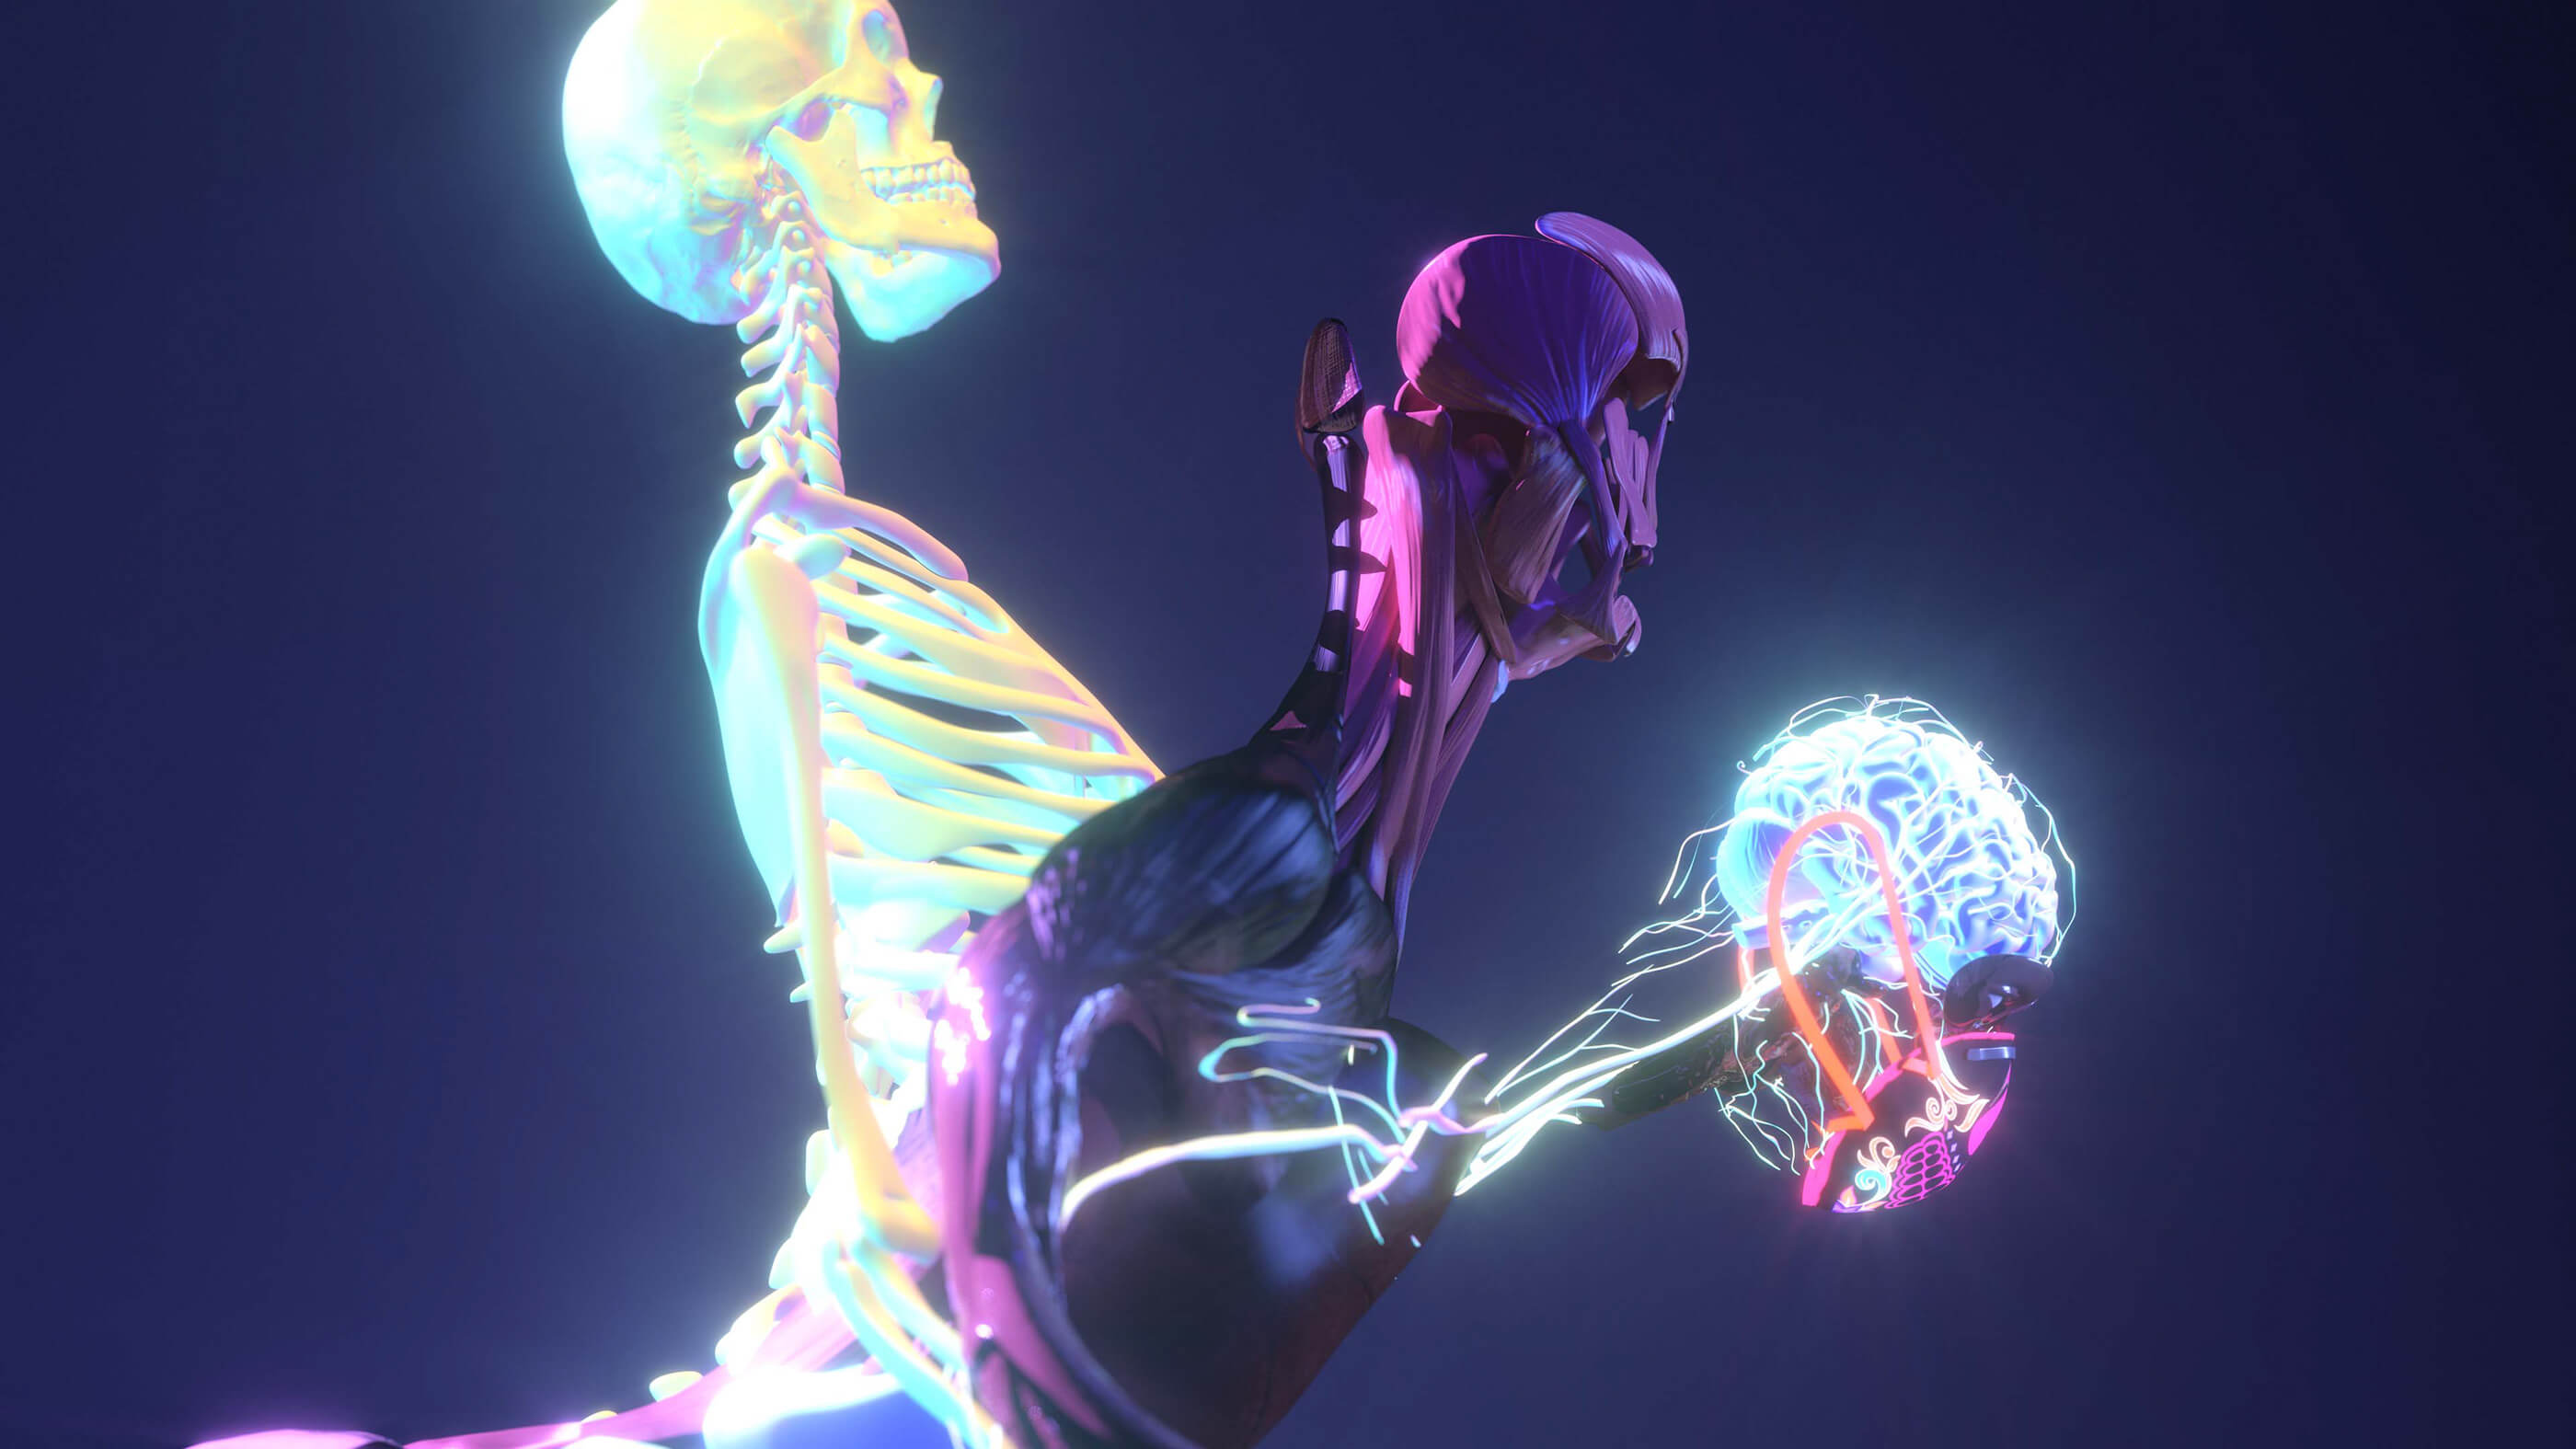 人体结构上采用风格化材质打造霓虹效果